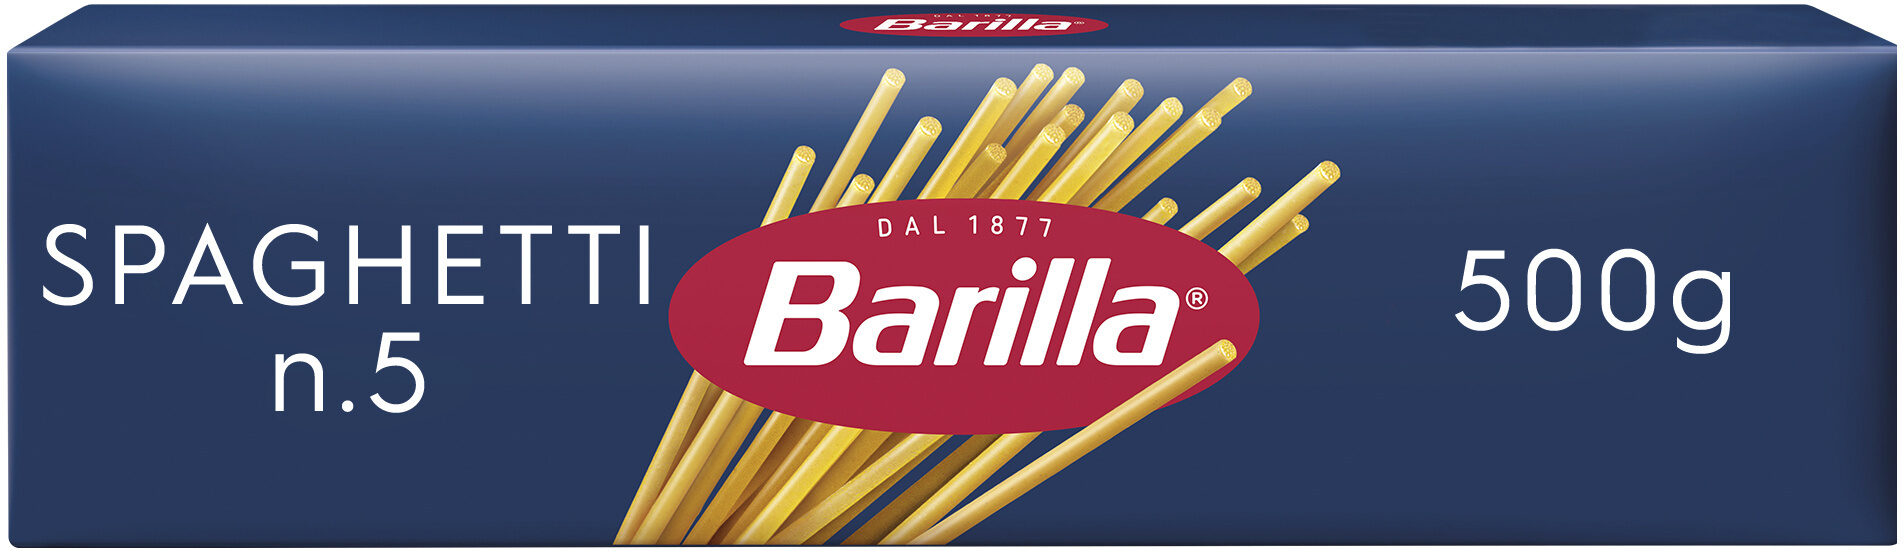 Barilla pates spaghetti n°5 500g - نتاج - fr